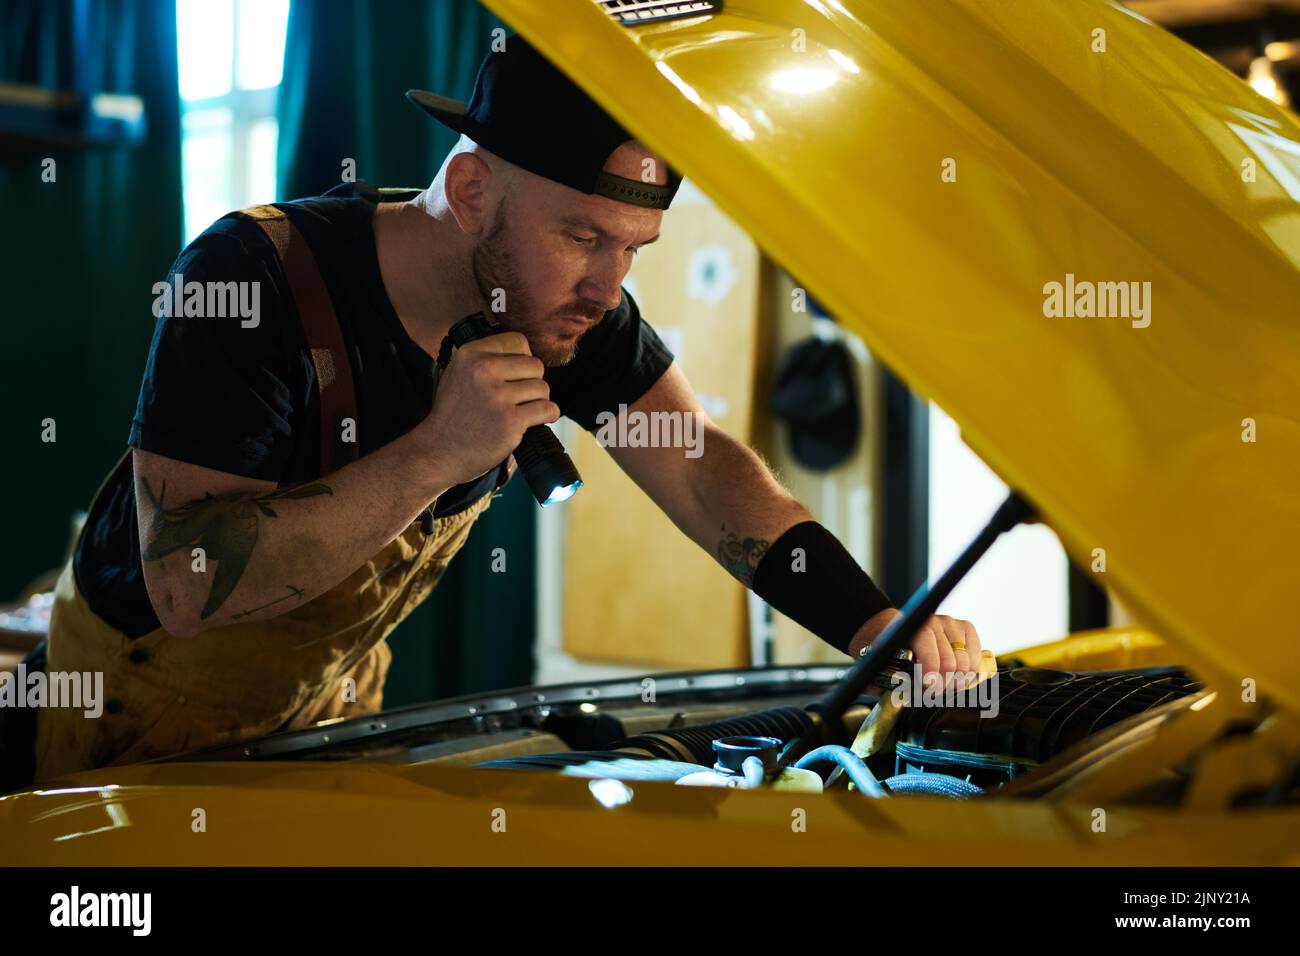 Giovane meccanico di officina di riparazione auto che controlla il motore di automobile gialla mentre dirige flashligh sul relativo motore Foto Stock